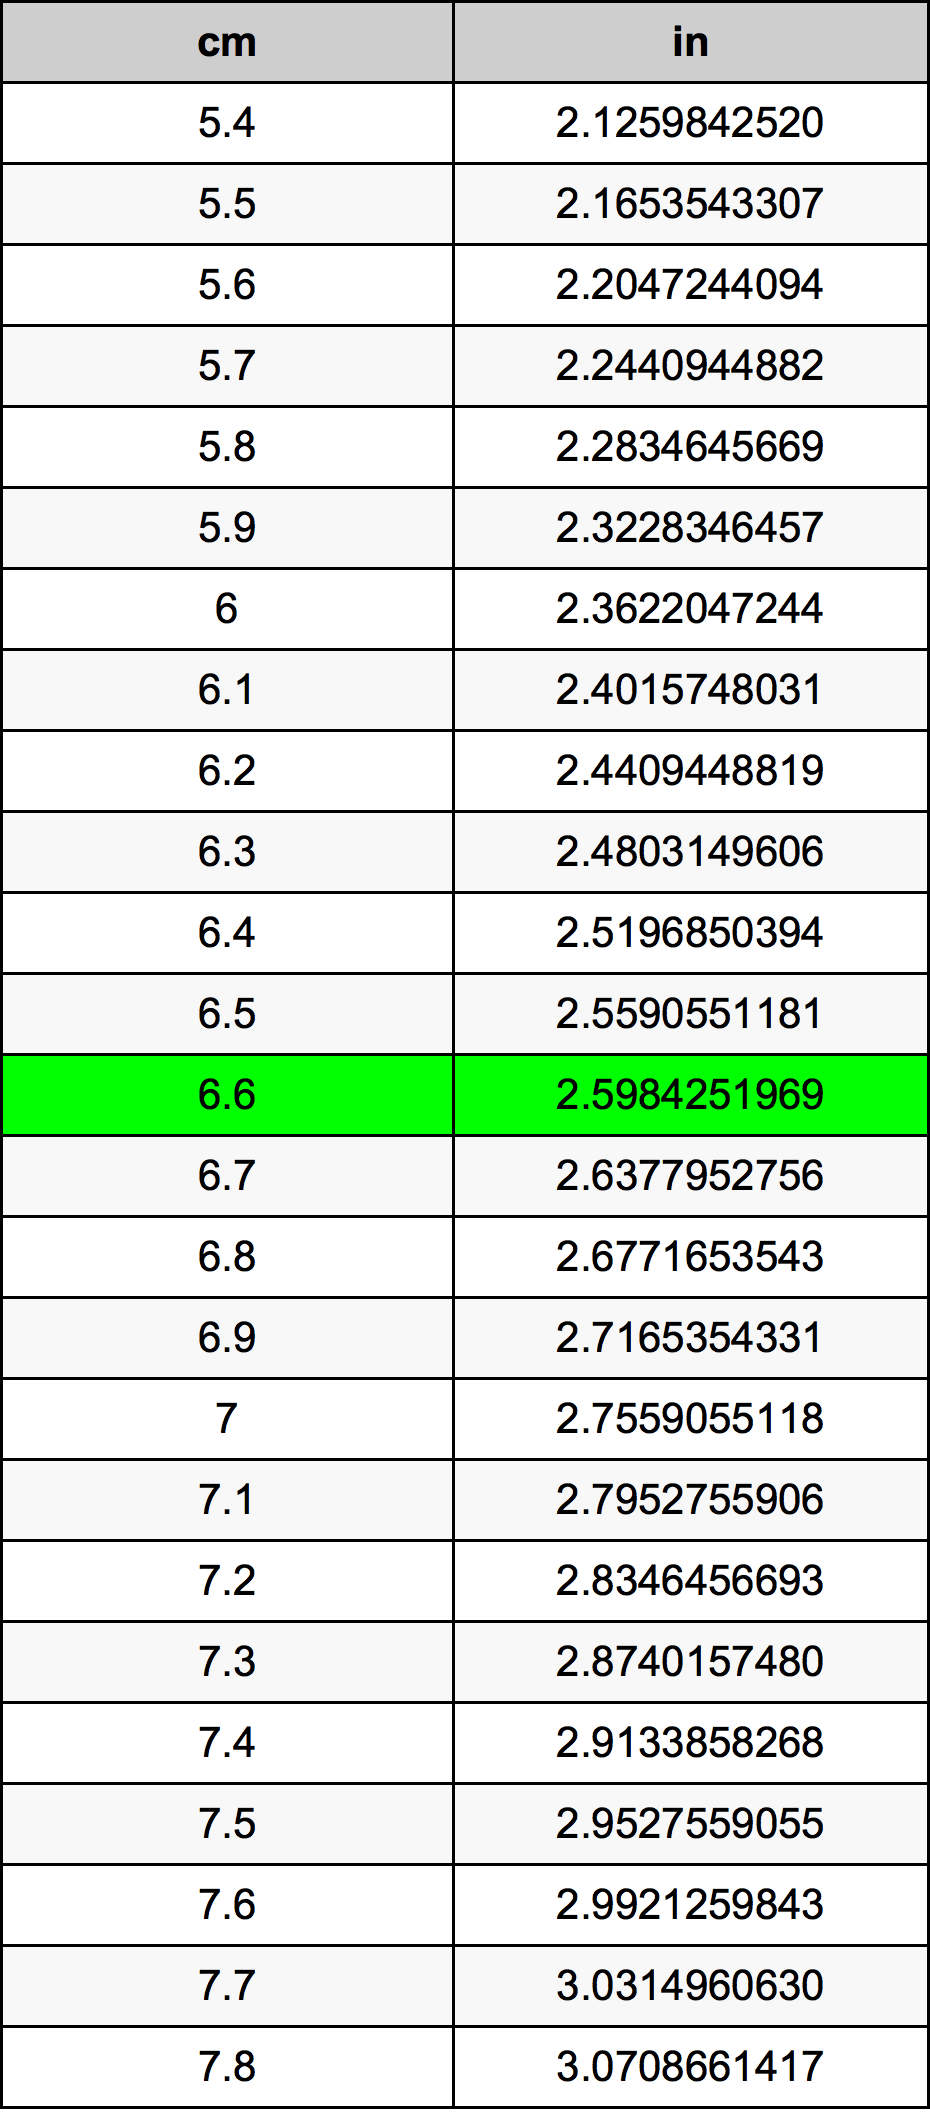 6.6 Centiméter átszámítási táblázat